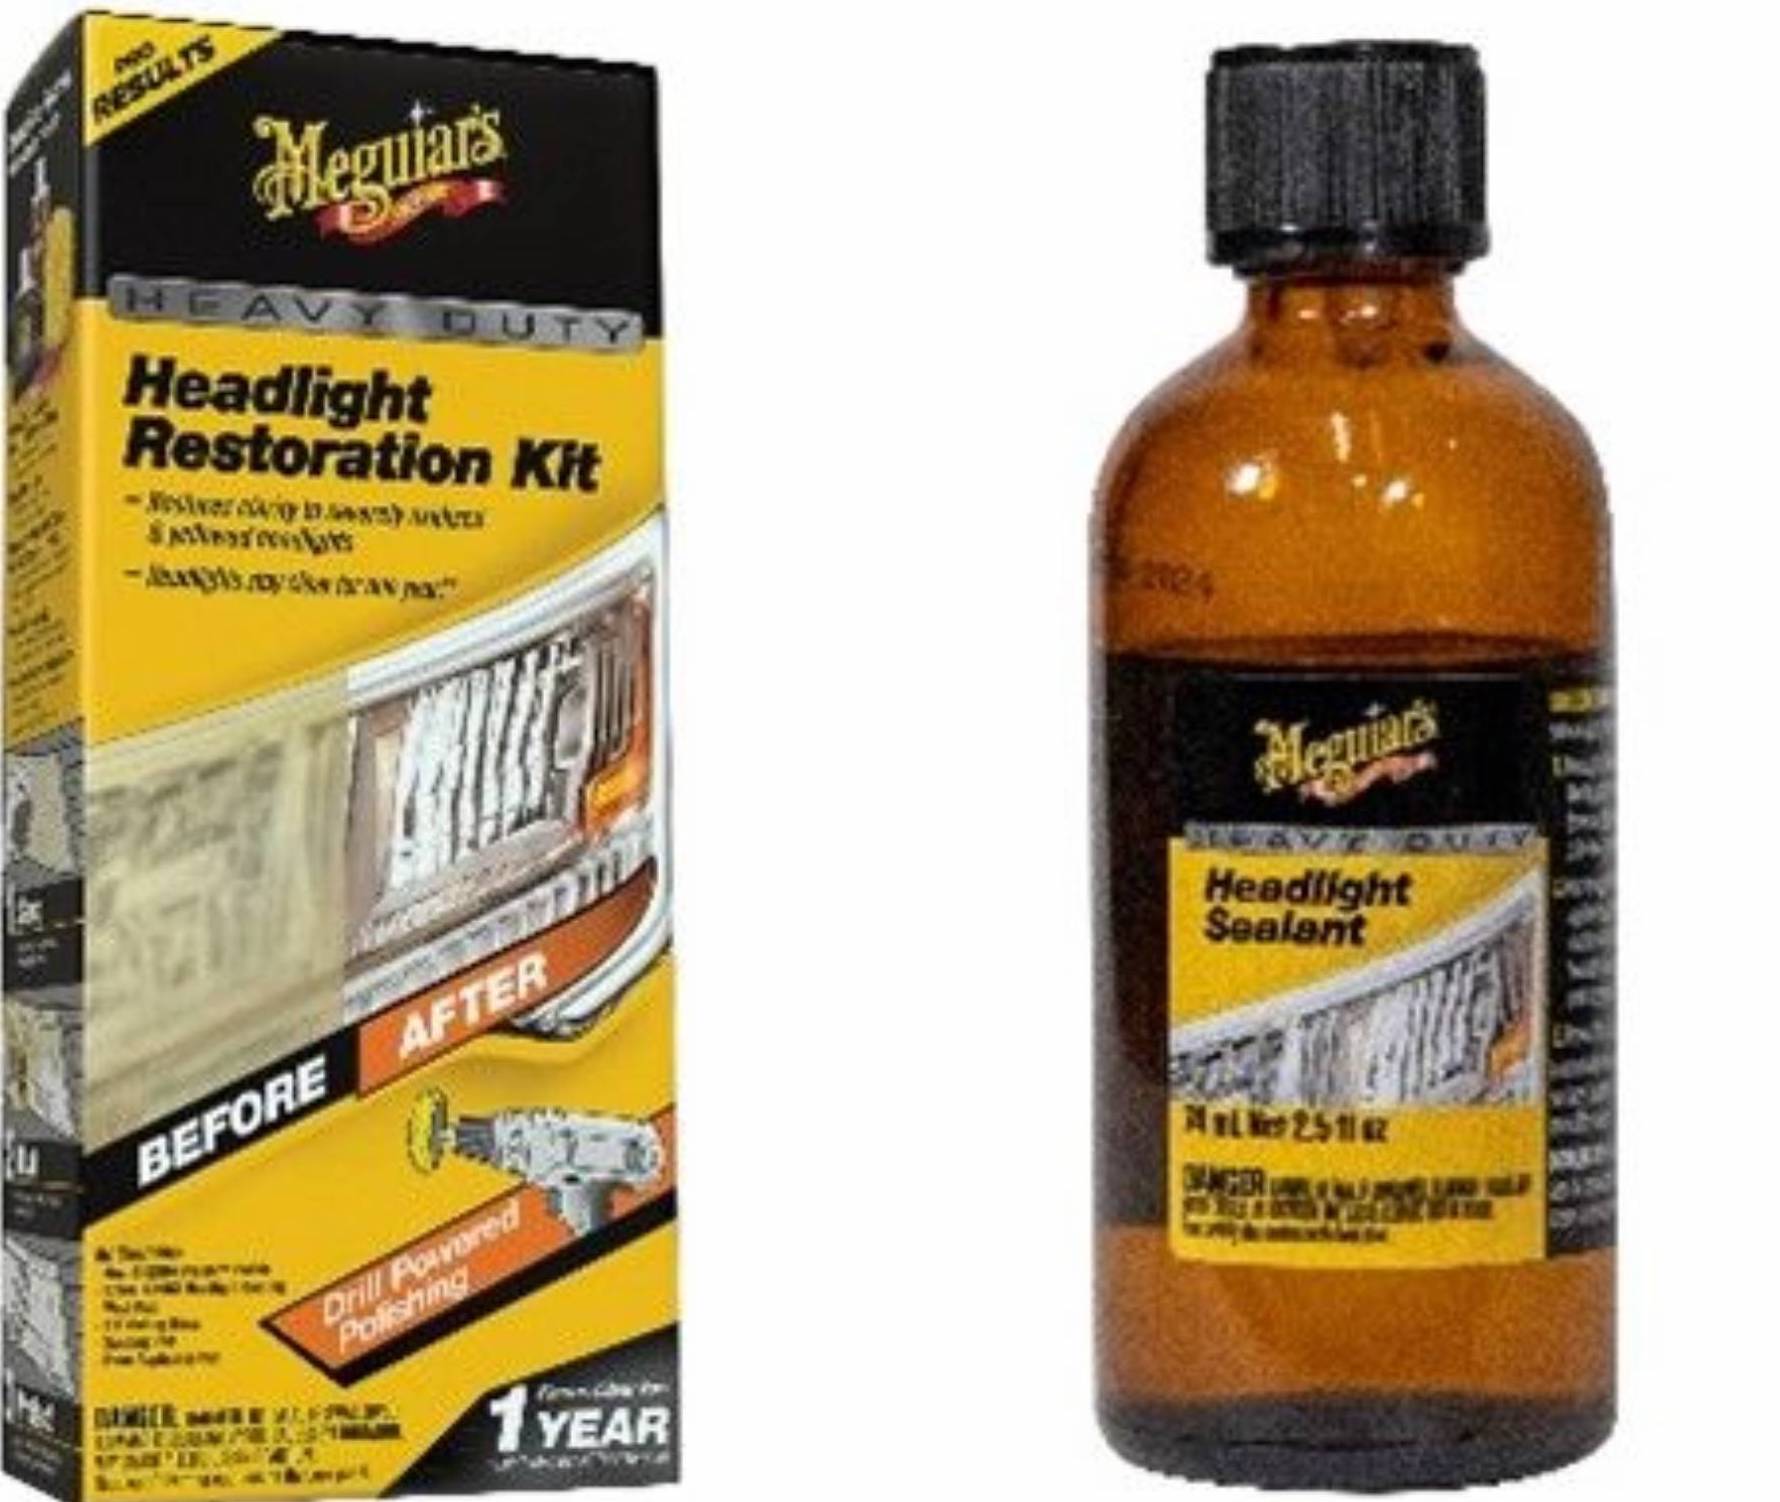 meguiar's headlight restoration kit